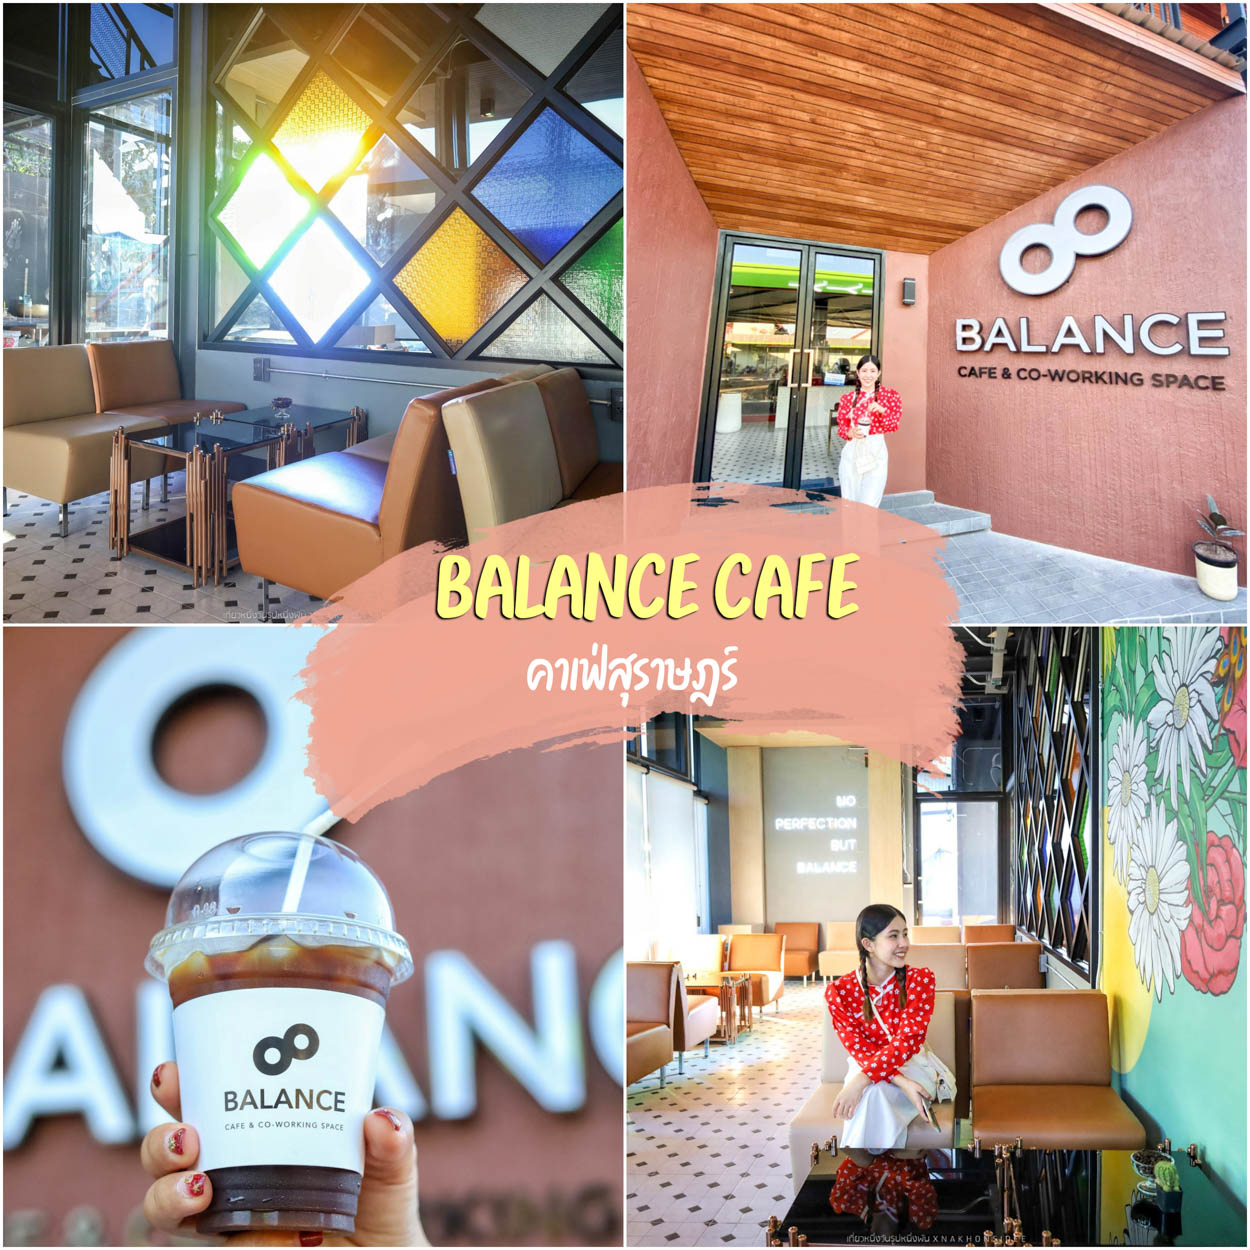 Balance Cafe and Co-Working Space คาเฟ่สุราษฏร์ธานี ร้านกาแฟฟินๆ เบเกอรี่โฮมเมด